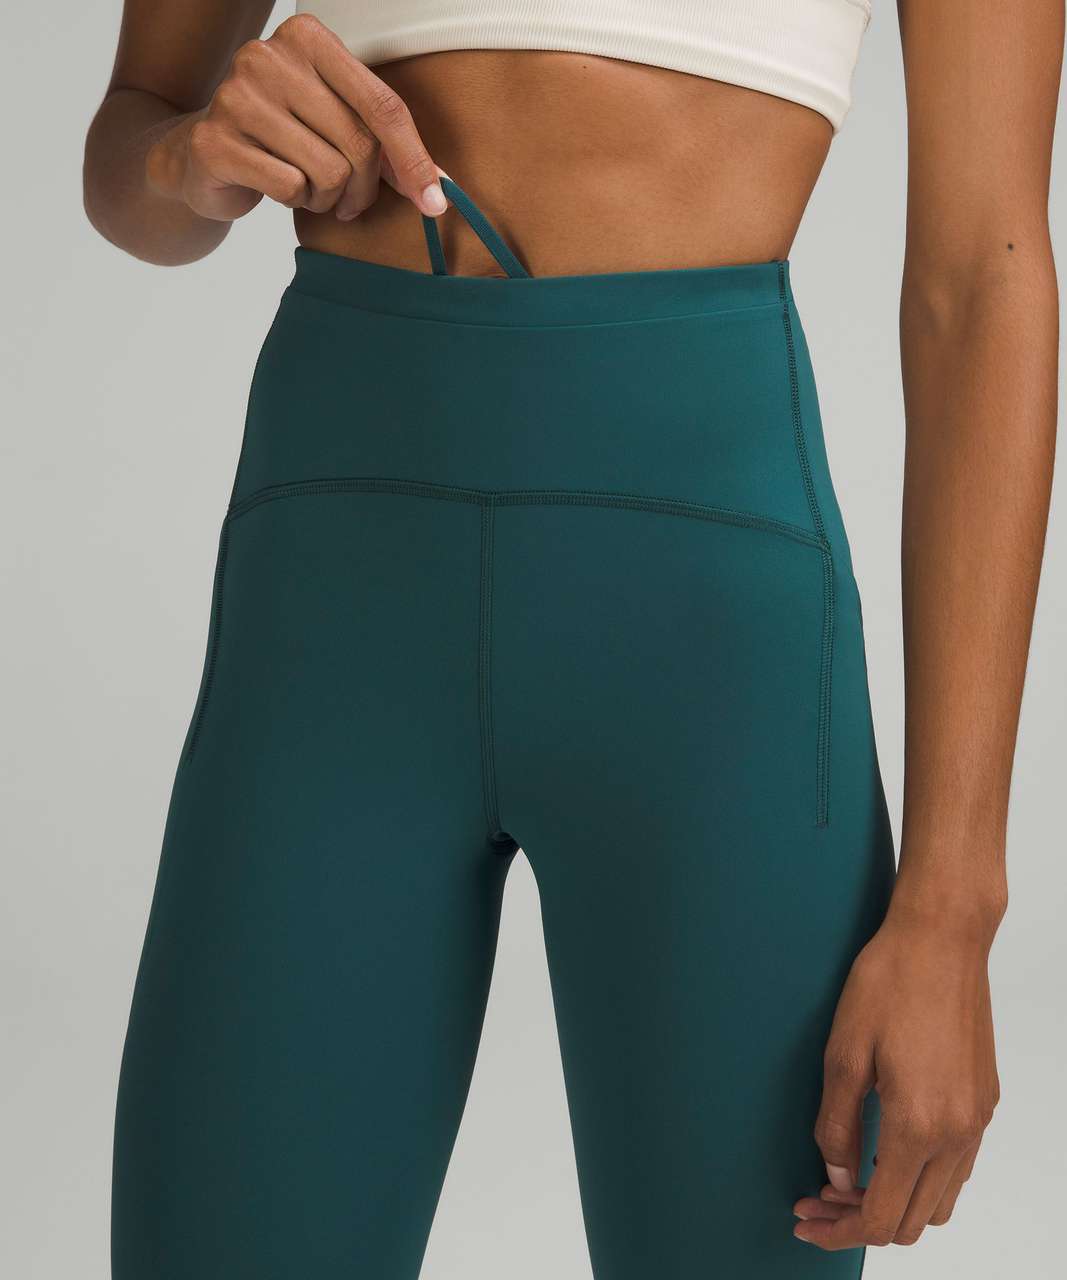 Lululemon Align leggings size 8 new! 28” NWT Green Jasper